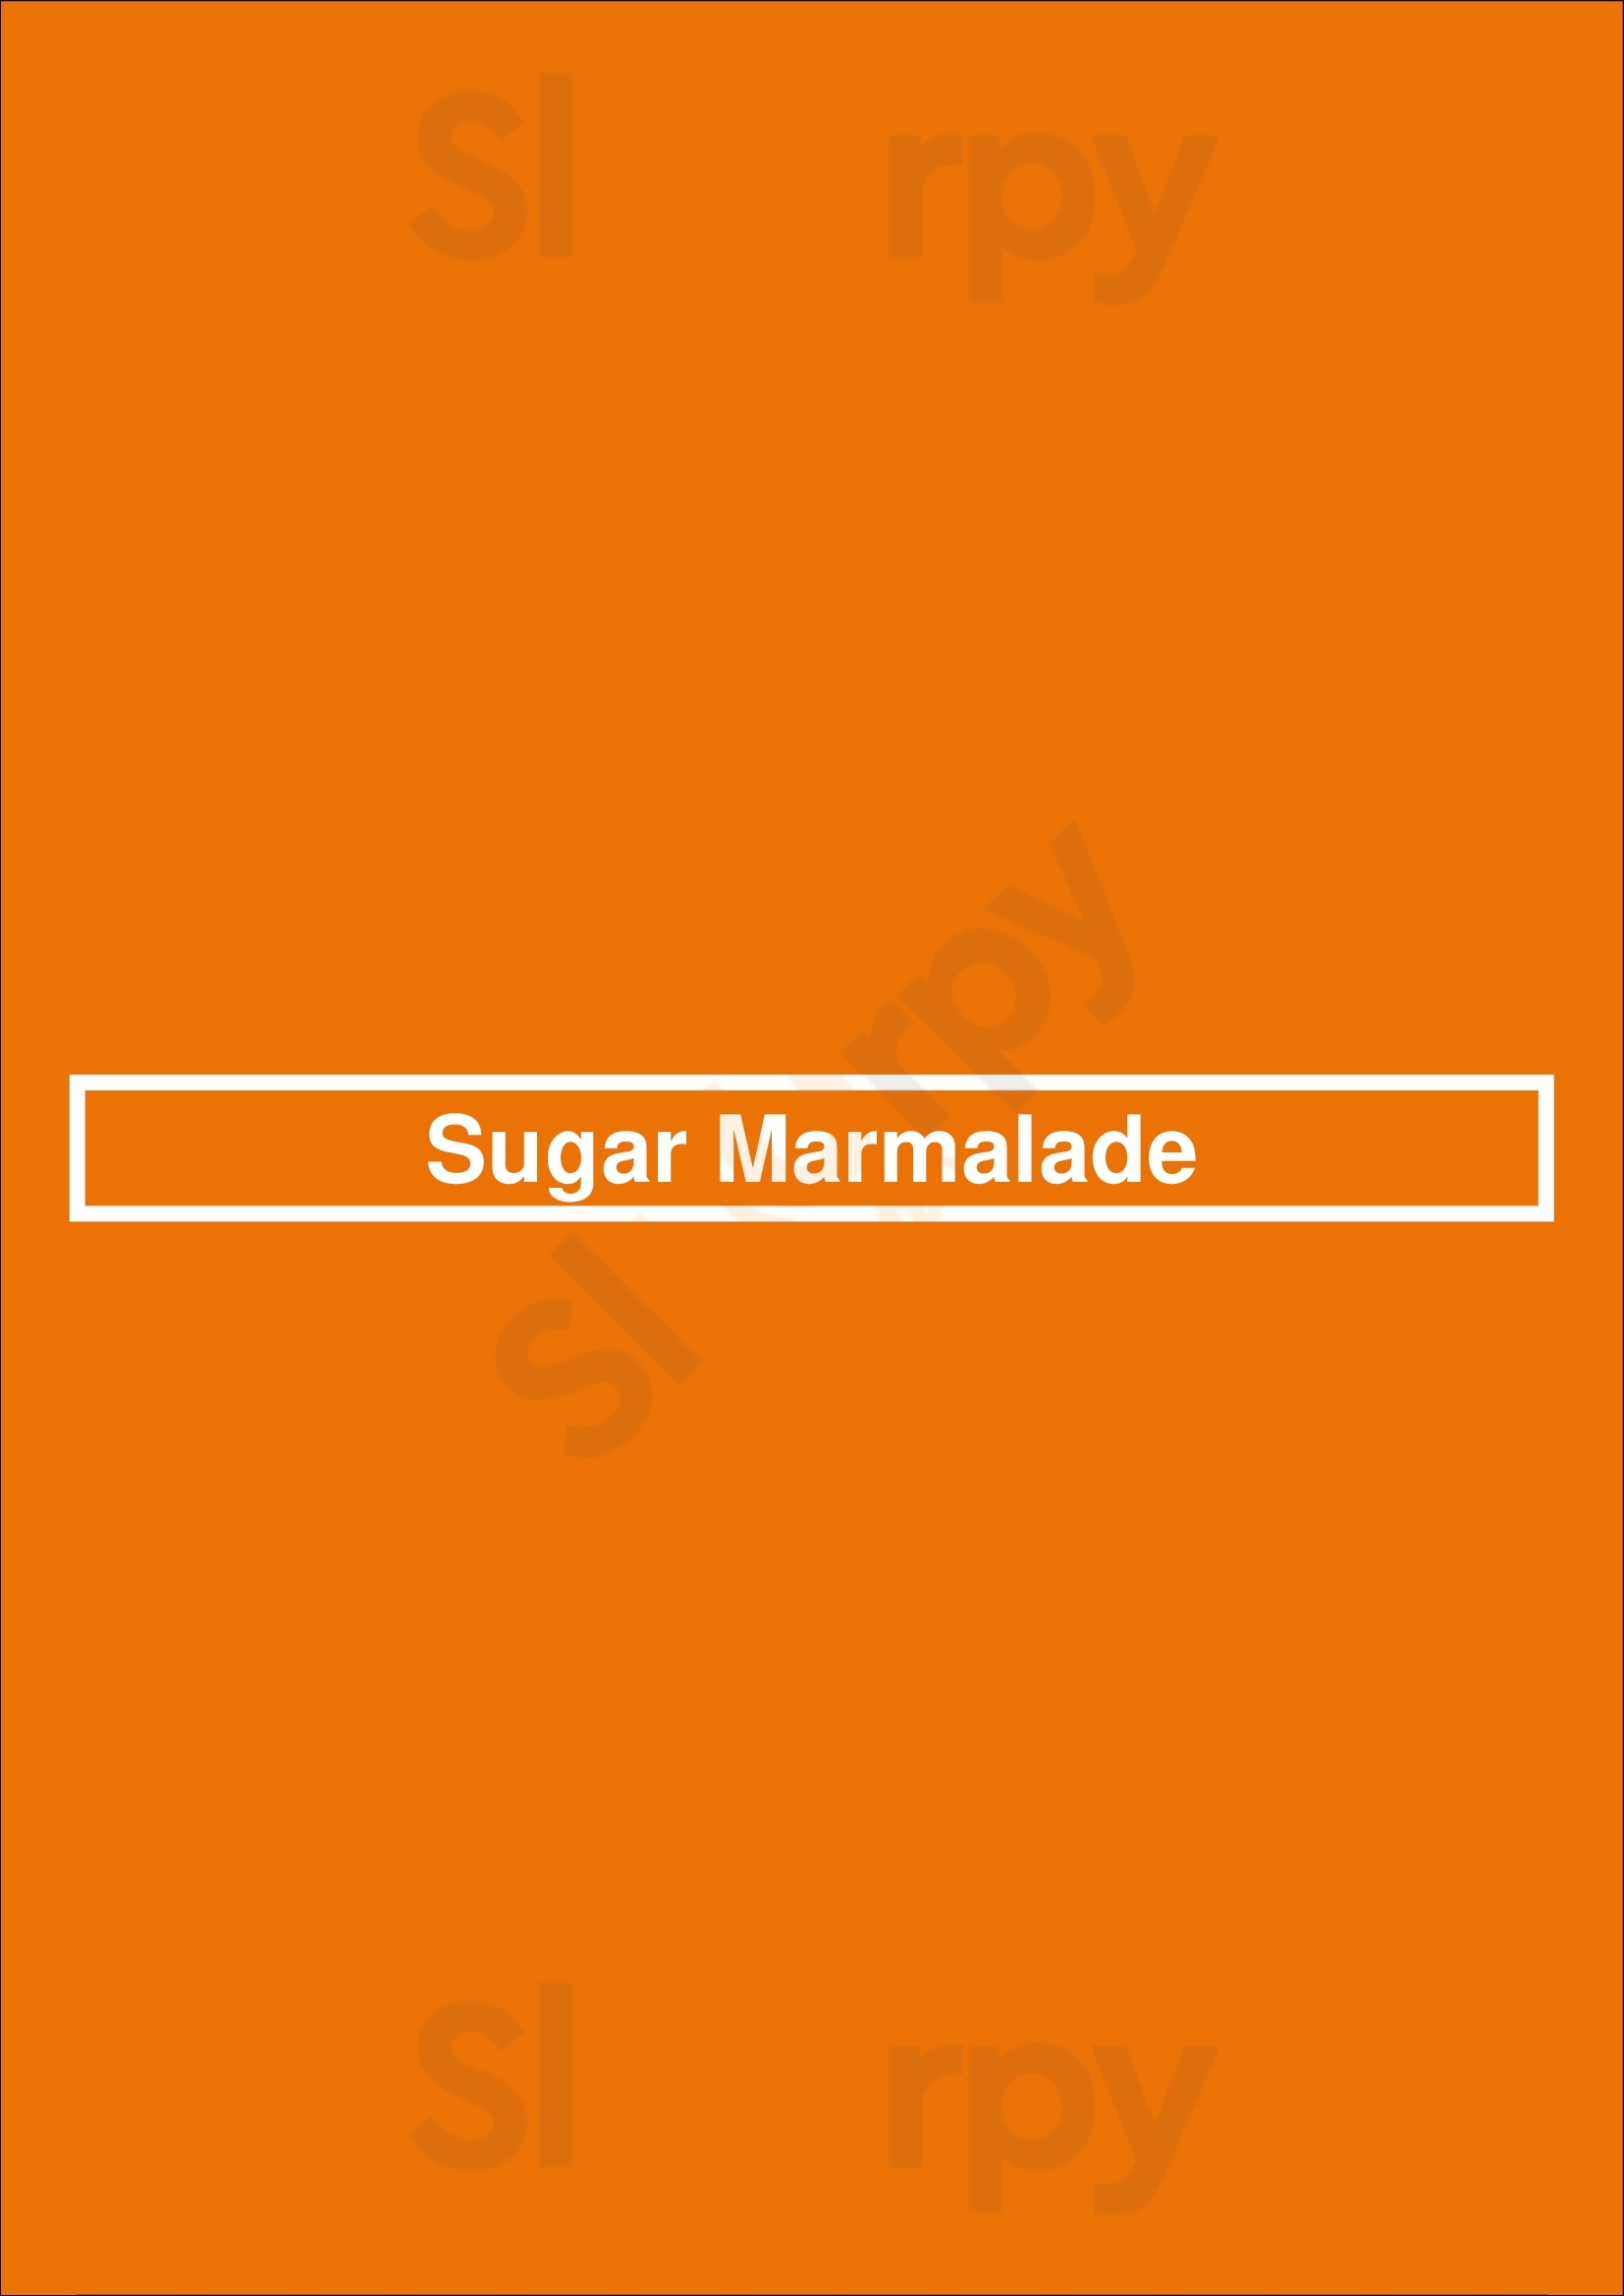 Sugar Marmalade Toronto Menu - 1